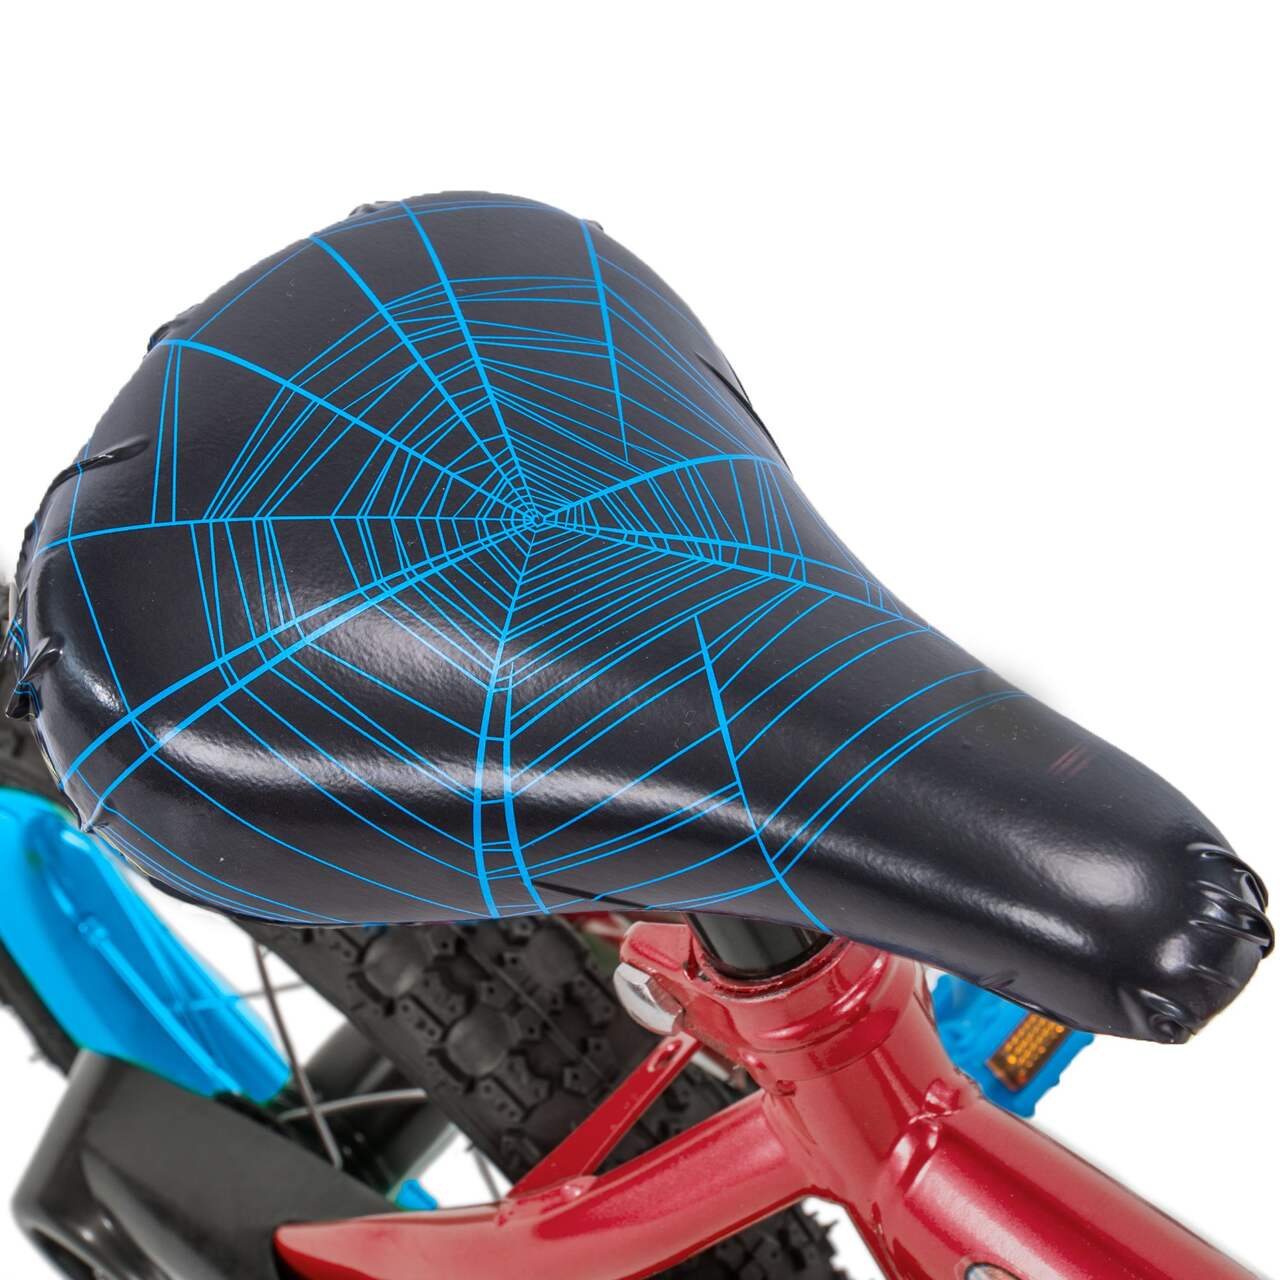 Vélo Marvel Spider-Man pour enfants, 12 po, rouge/bleu